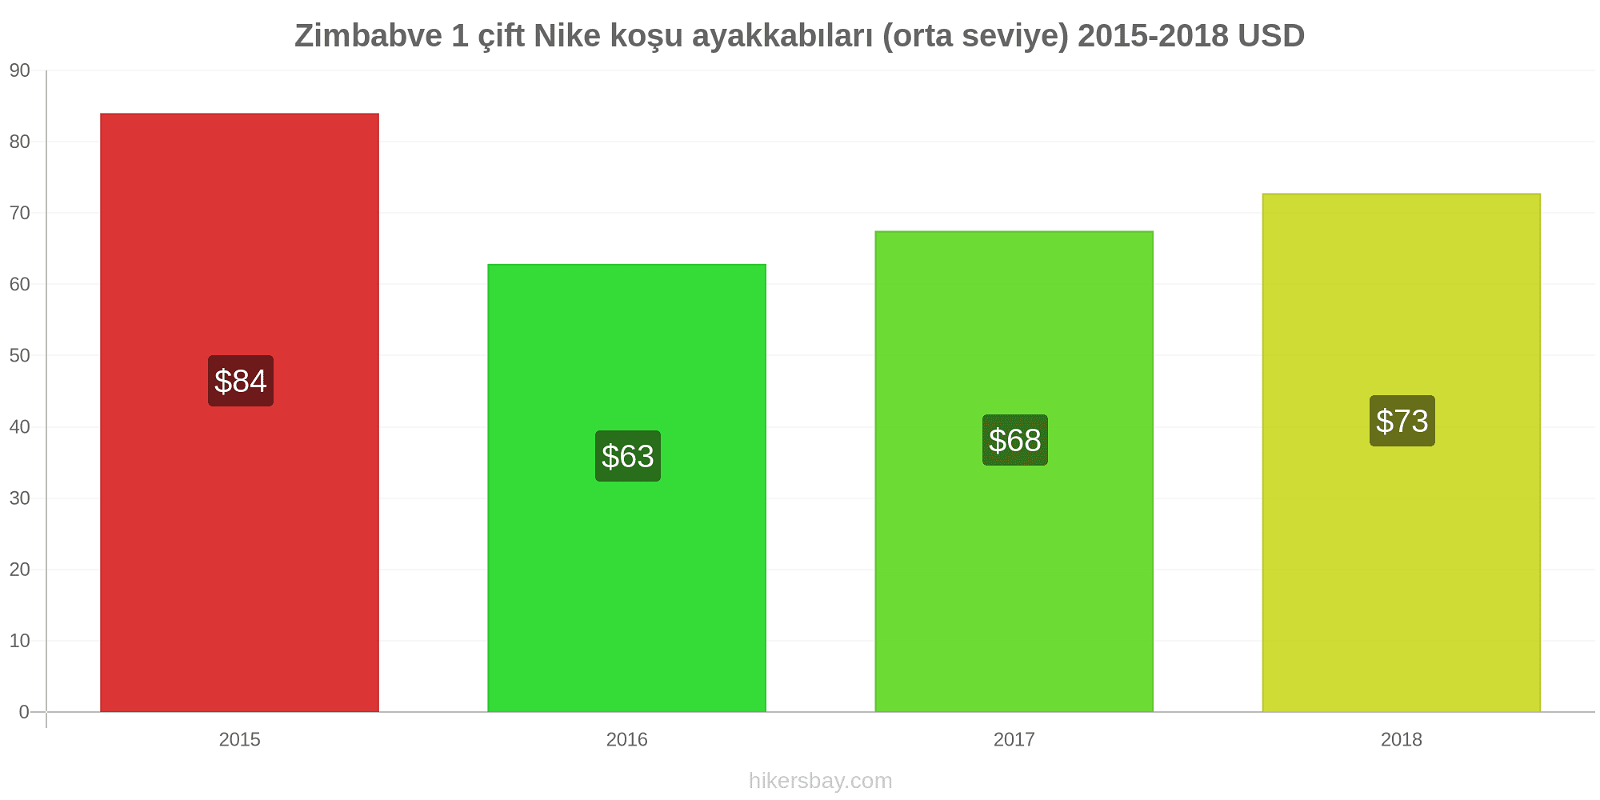 Zimbabve fiyat değişiklikleri 1 çift Nike koşu ayakkabıları (orta seviye) hikersbay.com